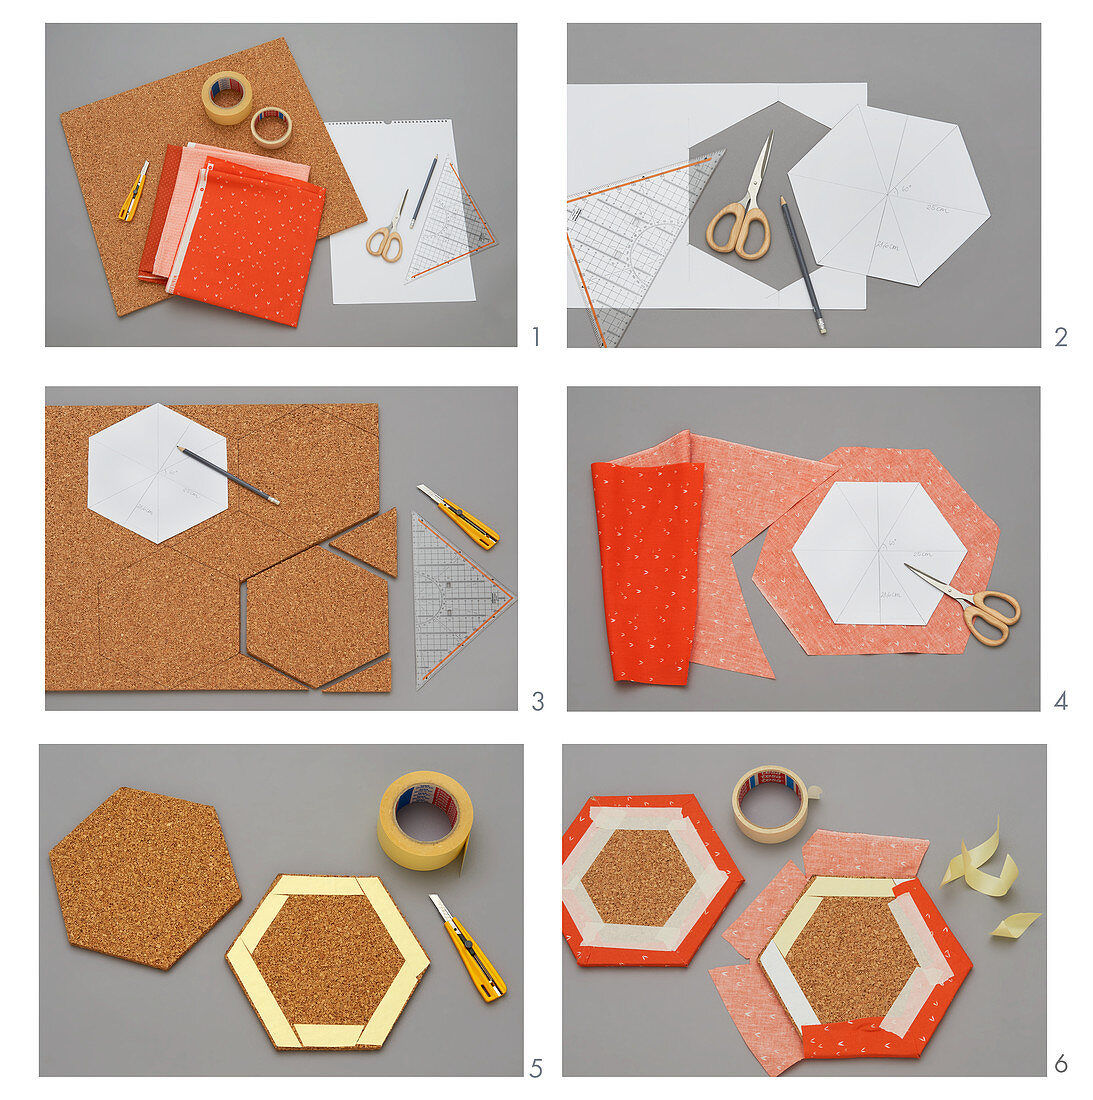 Pinnwand aus Hexagon-Platten herstellen